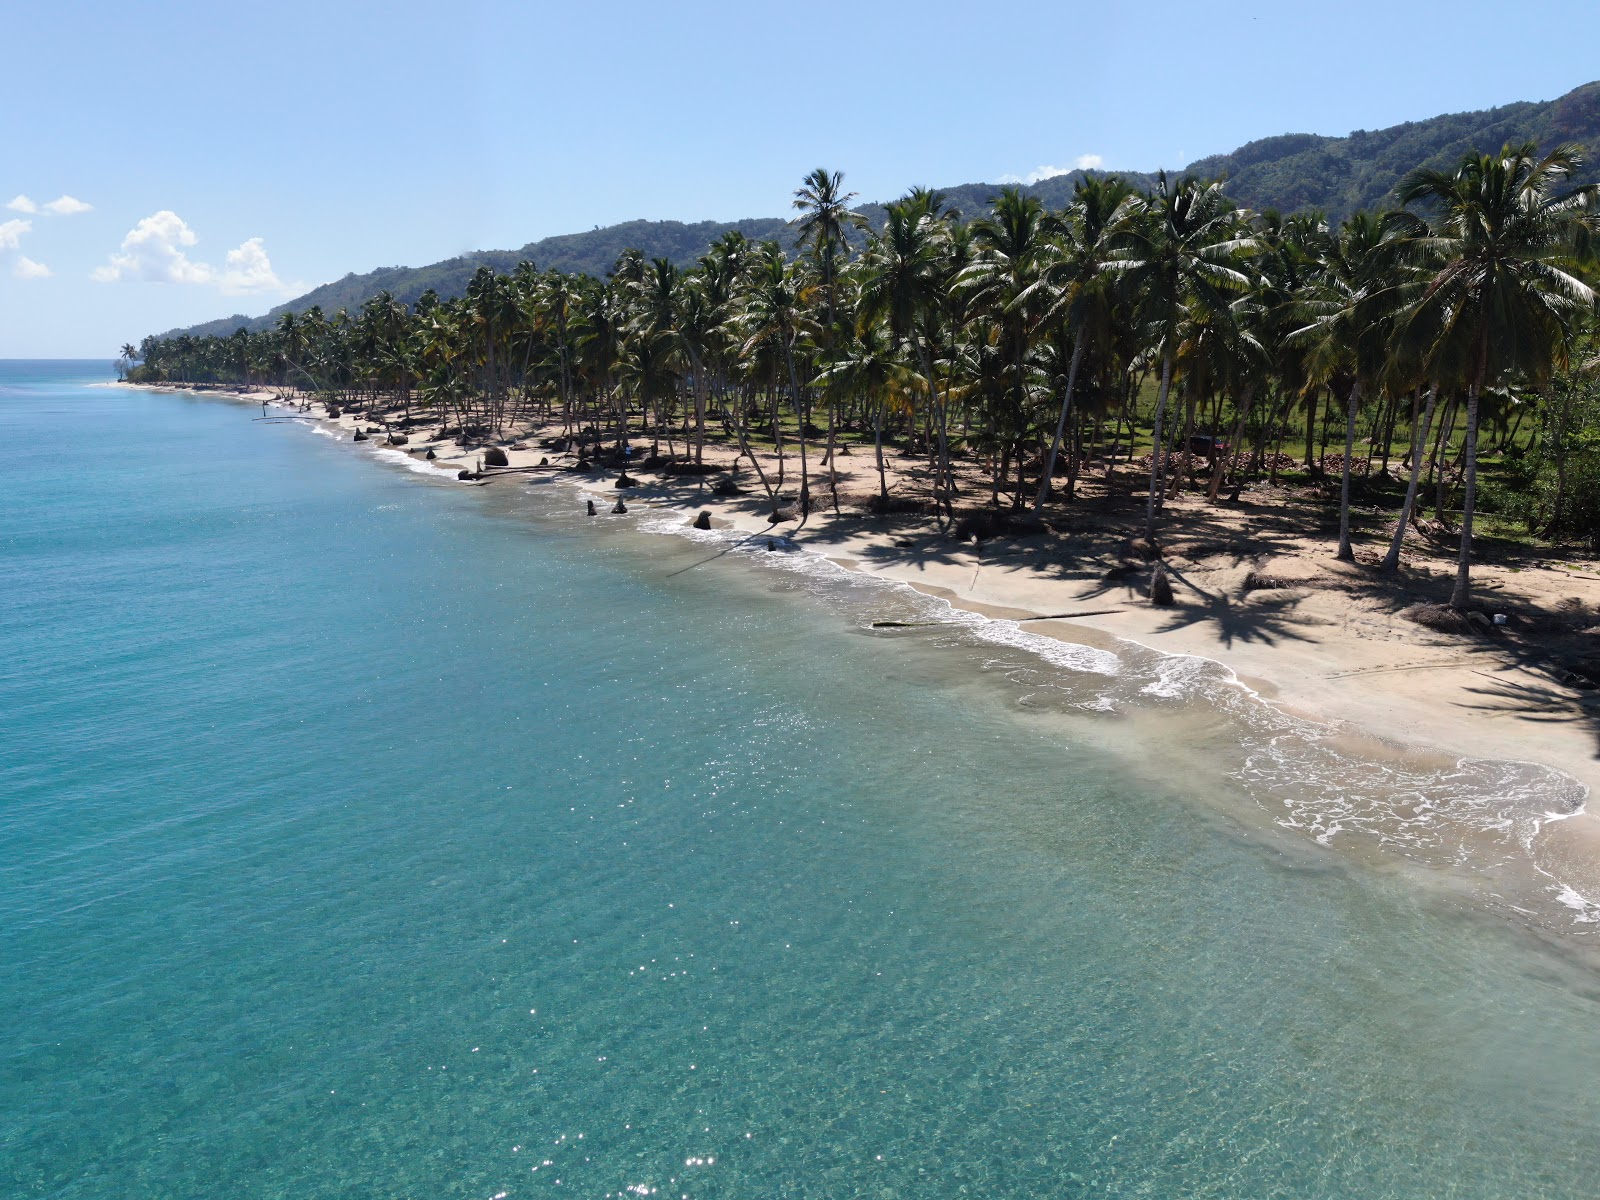 Playa Las Majaguas'in fotoğrafı parlak ince kum yüzey ile